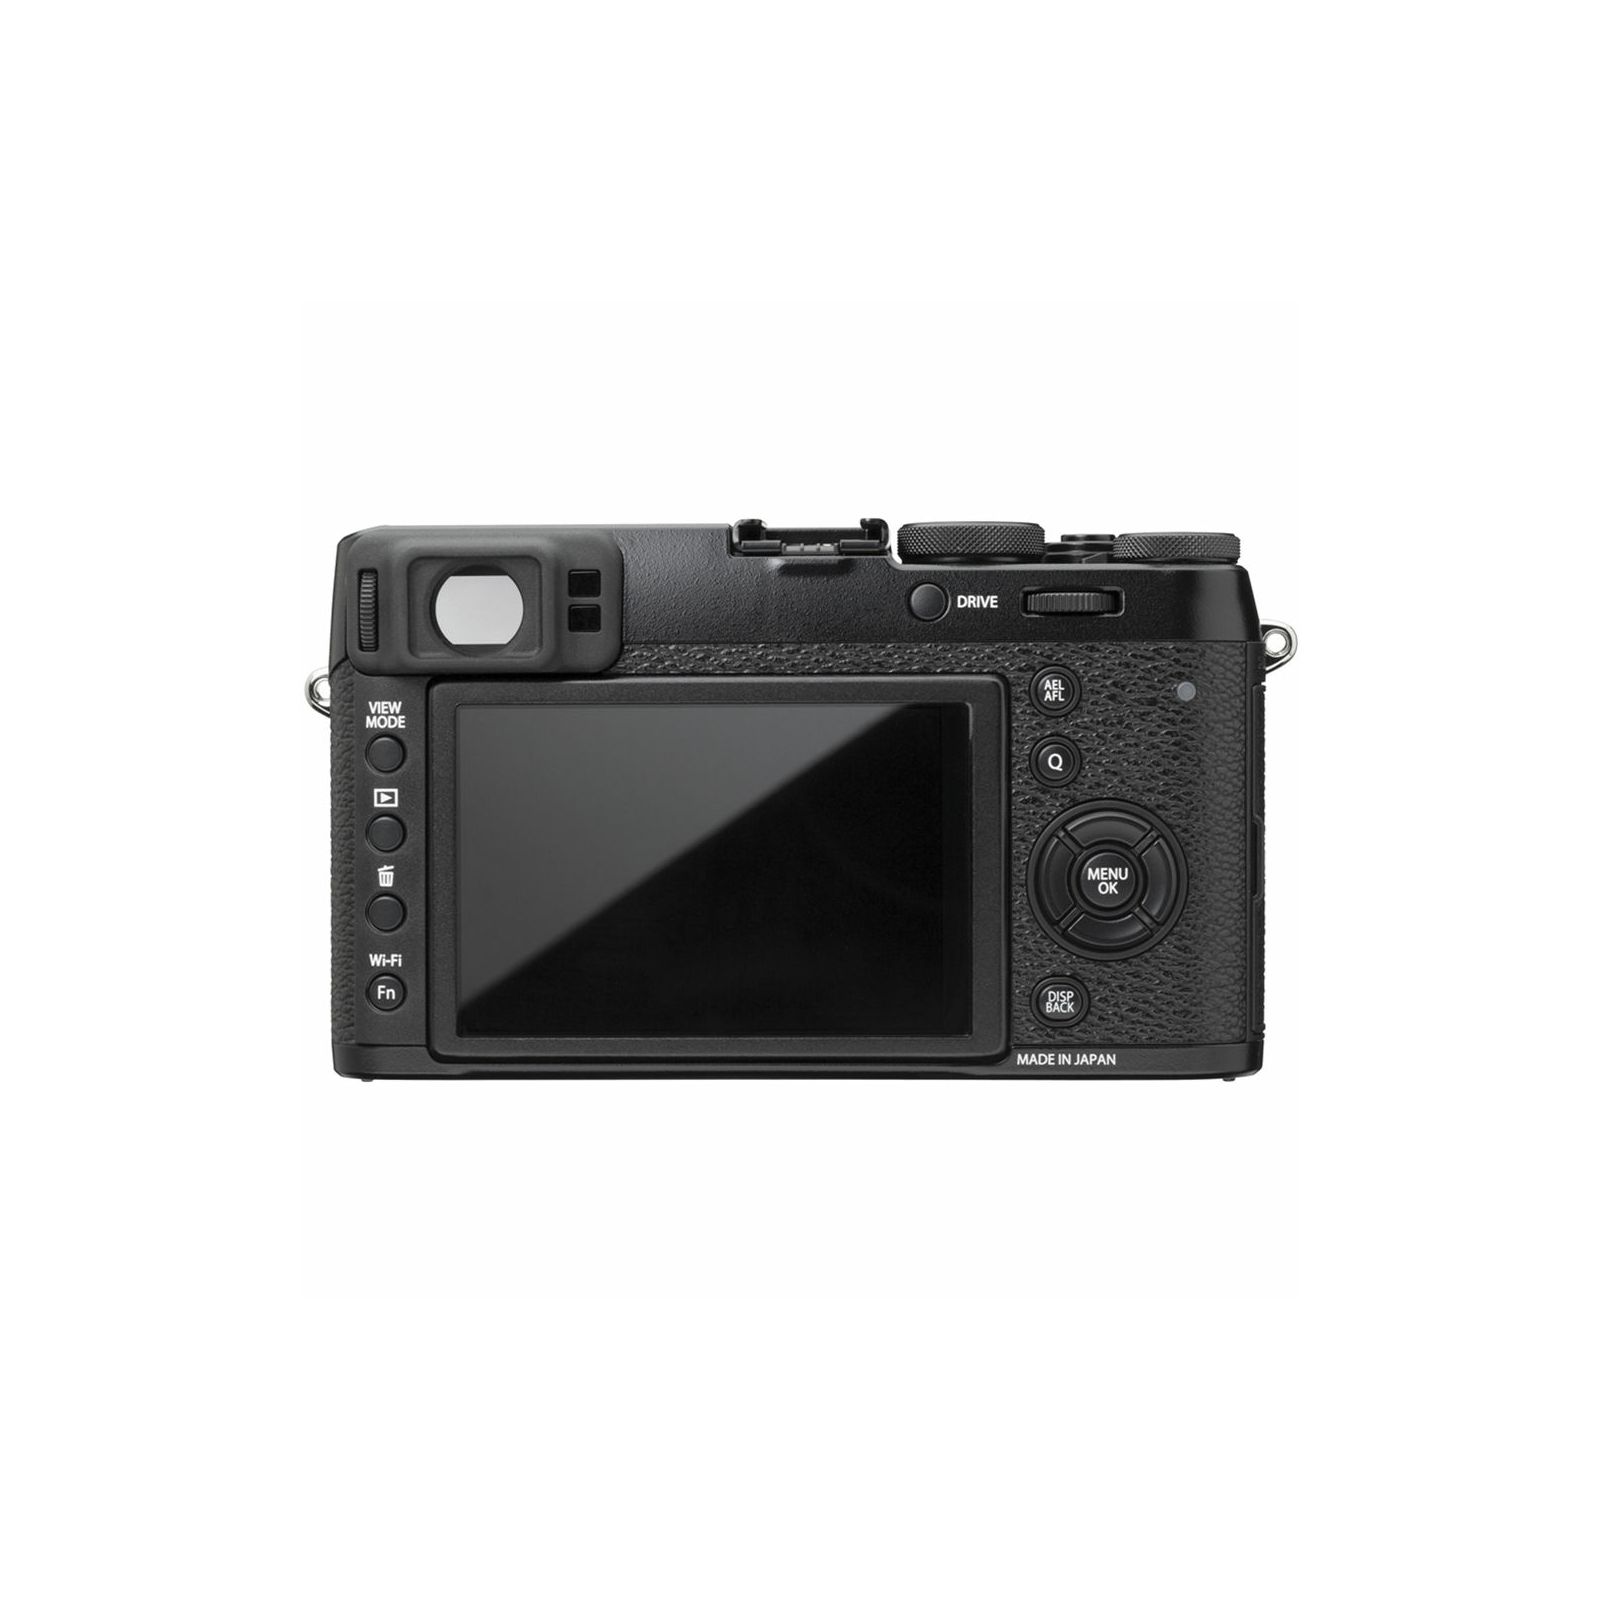 Fuji X-100T Fujifilm digitalni fotoaparat crni Pro / Enthusiast fixed lens X100T 23mm F2.0, X-Trans2 PD (16m, APS), 3.0" LCD, 1040k + OVF